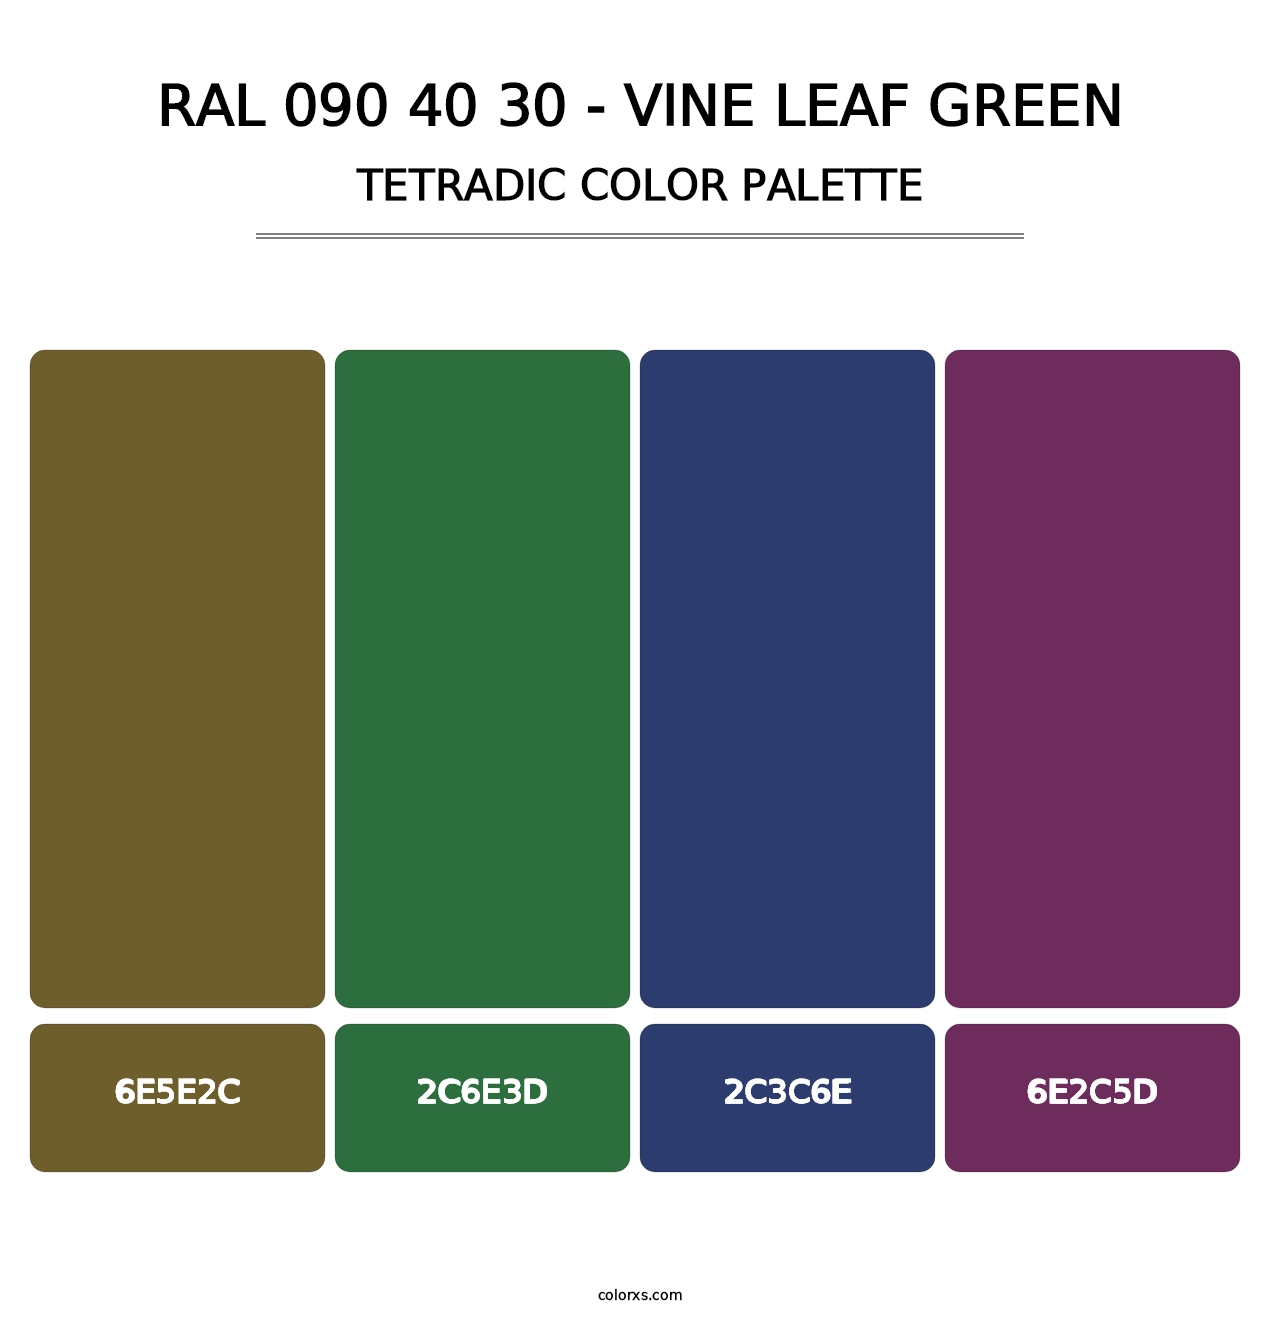 RAL 090 40 30 - Vine Leaf Green - Tetradic Color Palette